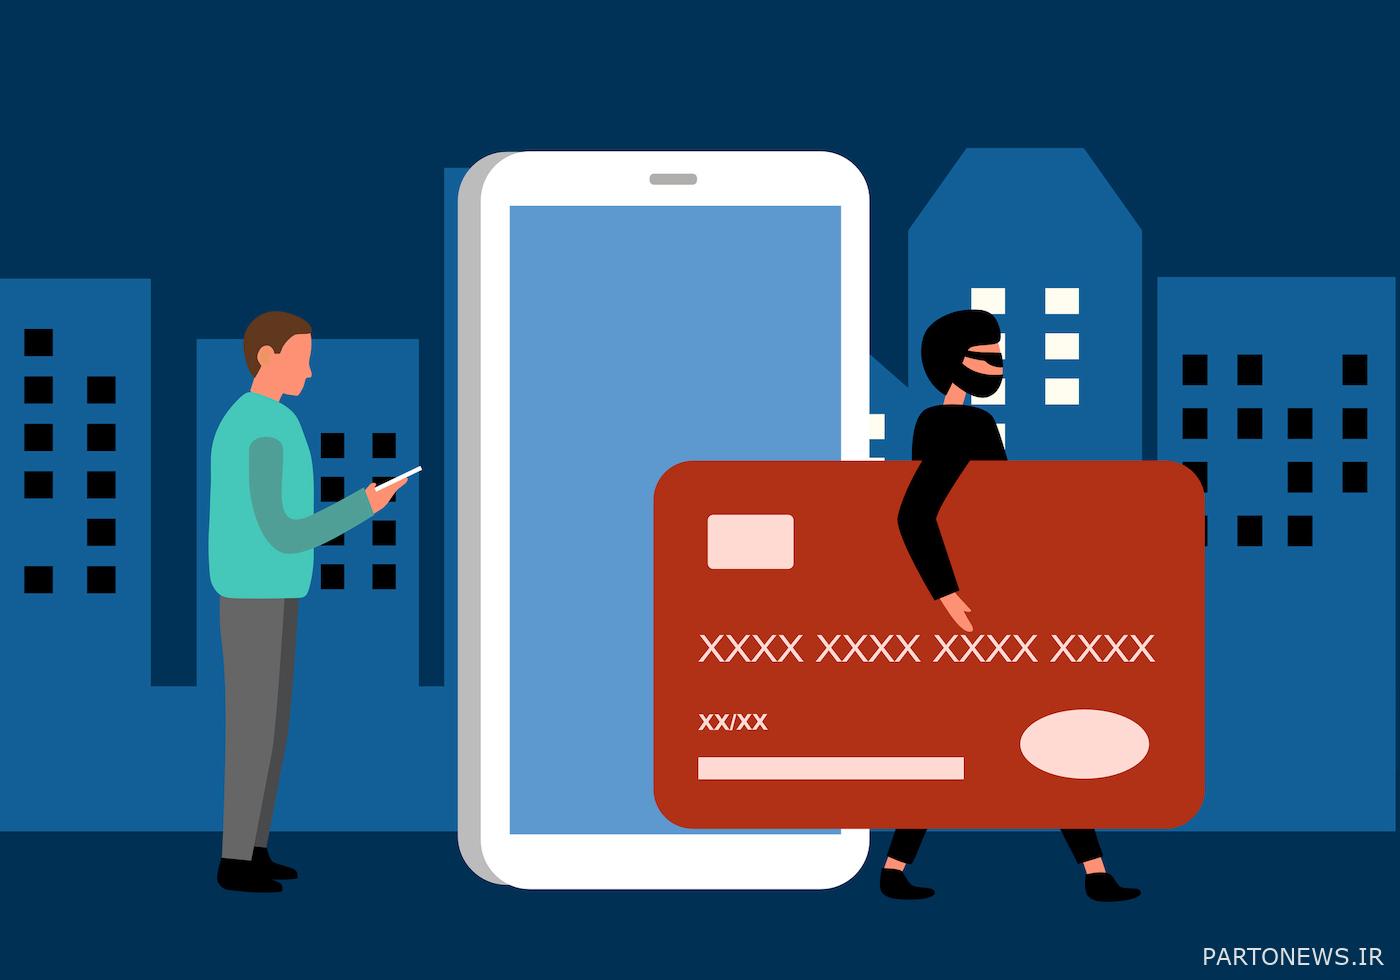 مفهوم کلاهبرداری پرداخت آنلاین کارت اعتباری. هکر اینترنتی در حال سرقت پول جرایم سایبری از برنامه پرداخت تلفن هوشمند.